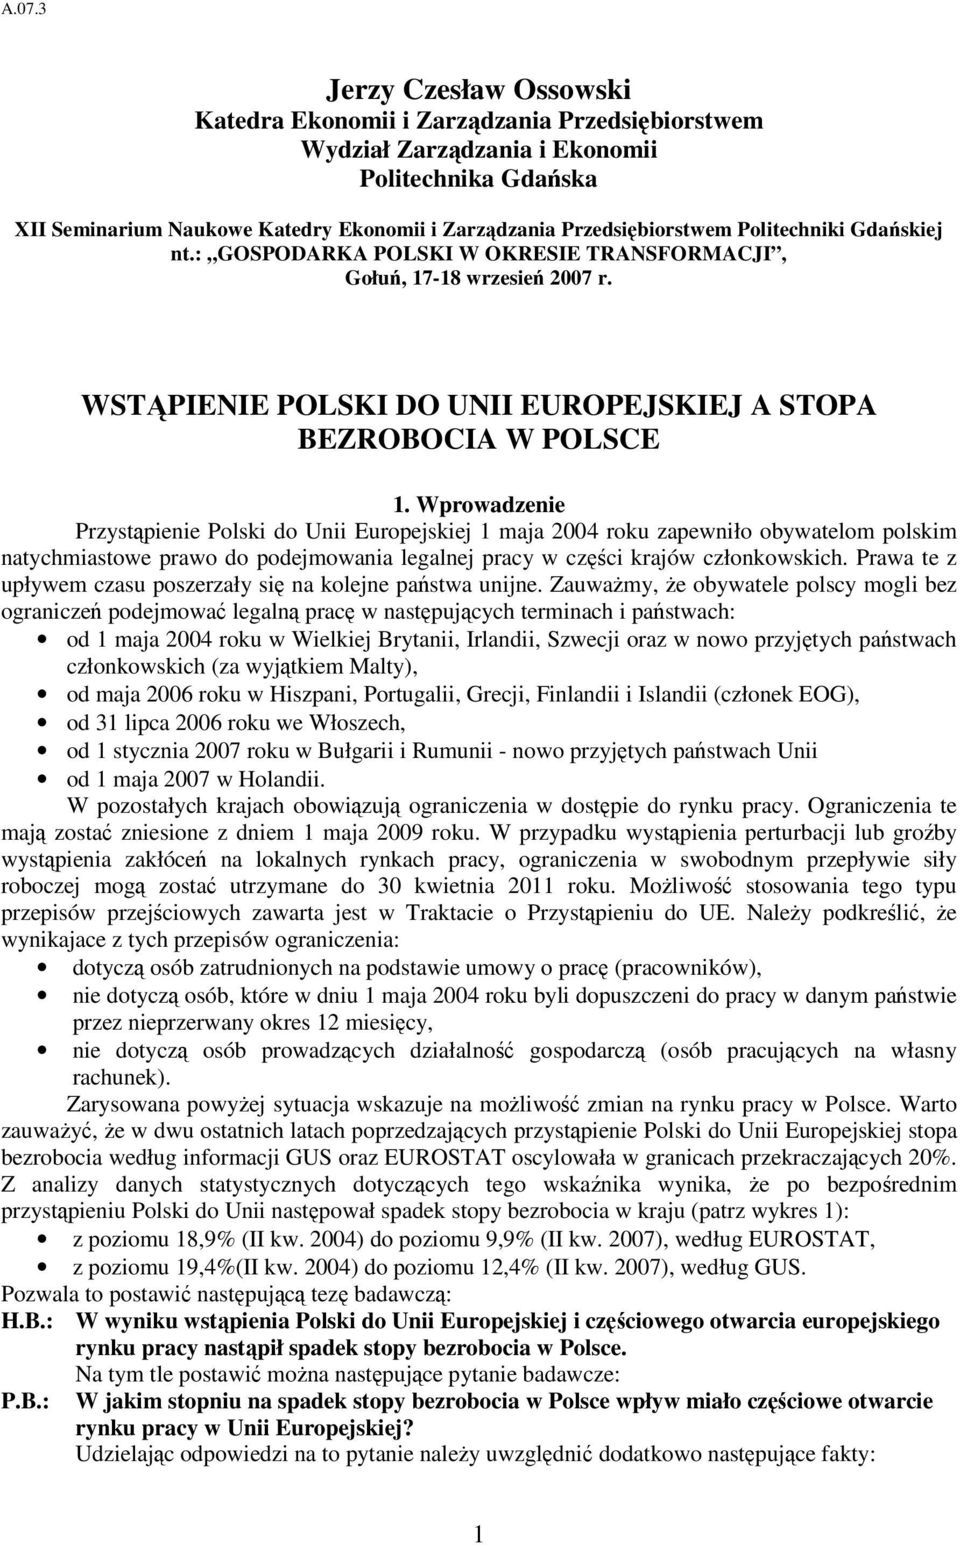 Wprowadzenie Przyspienie Polski do Unii Europejskiej 1 maja 2004 roku zapewniło obywaelom polskim naychmiasowe prawo do podejmowania legalnej pracy w czci krajów członkowskich.